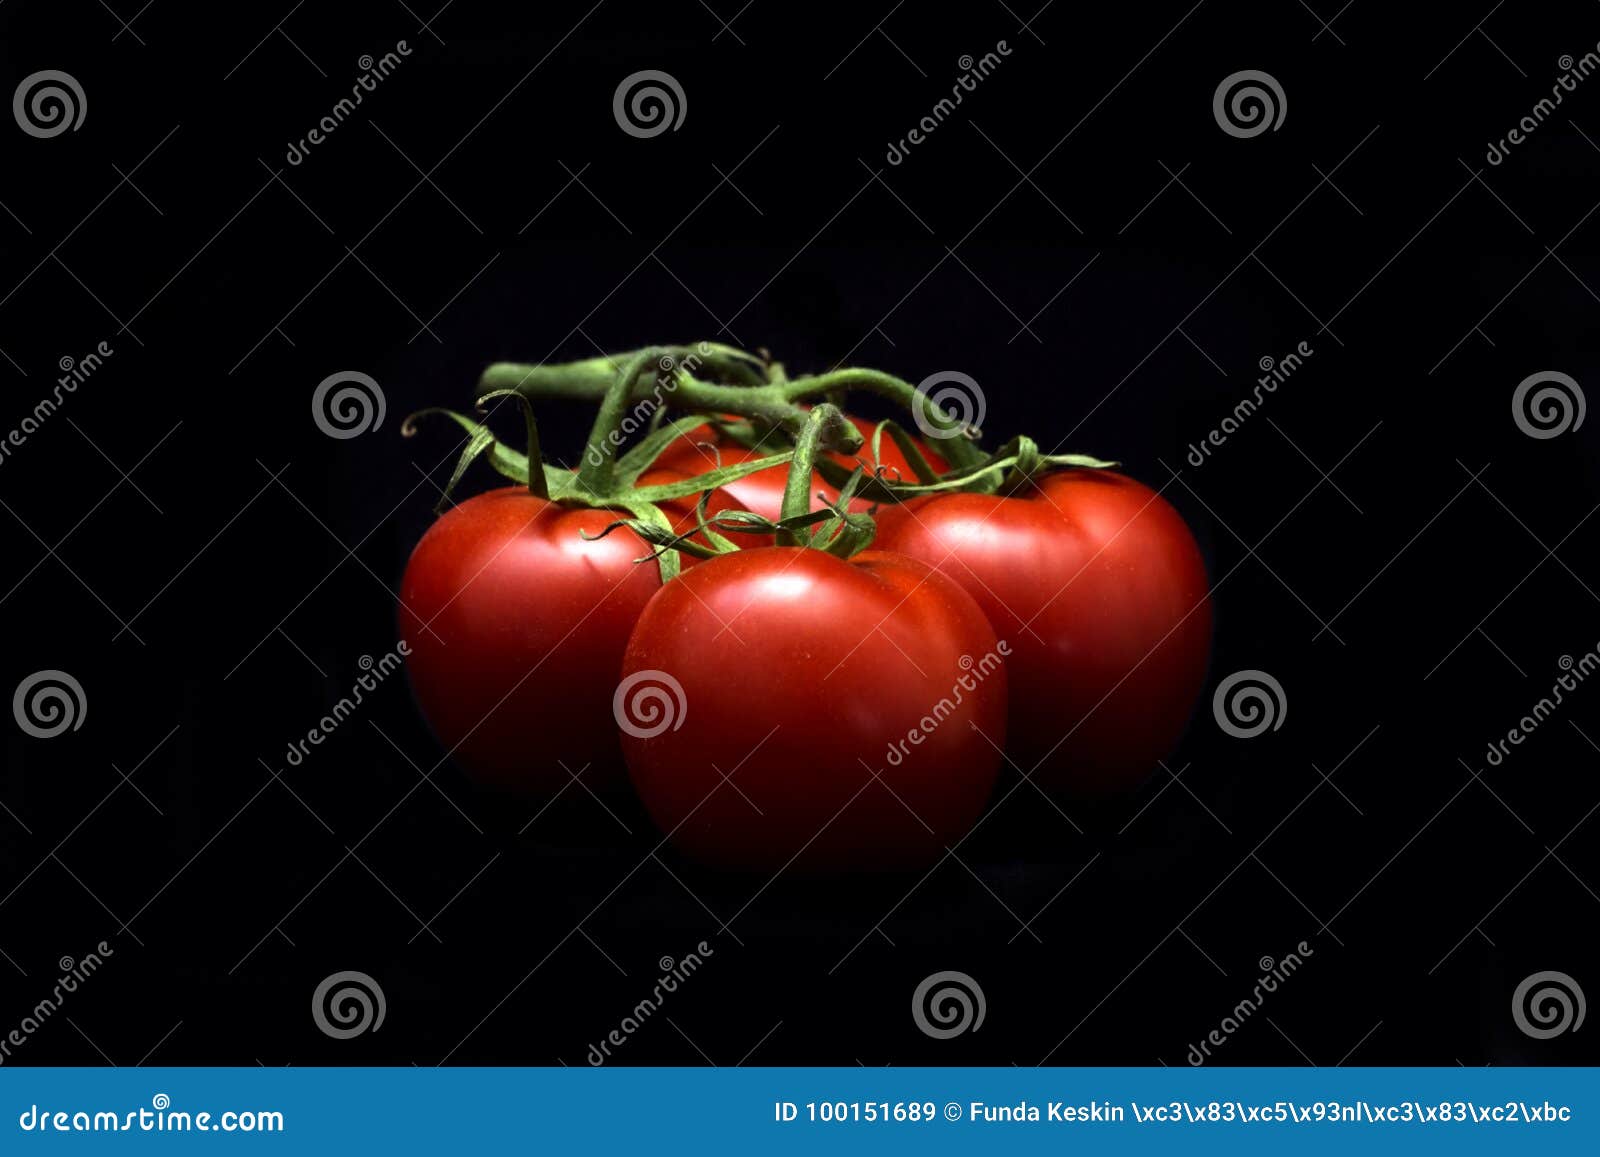 juicy fresh tomate